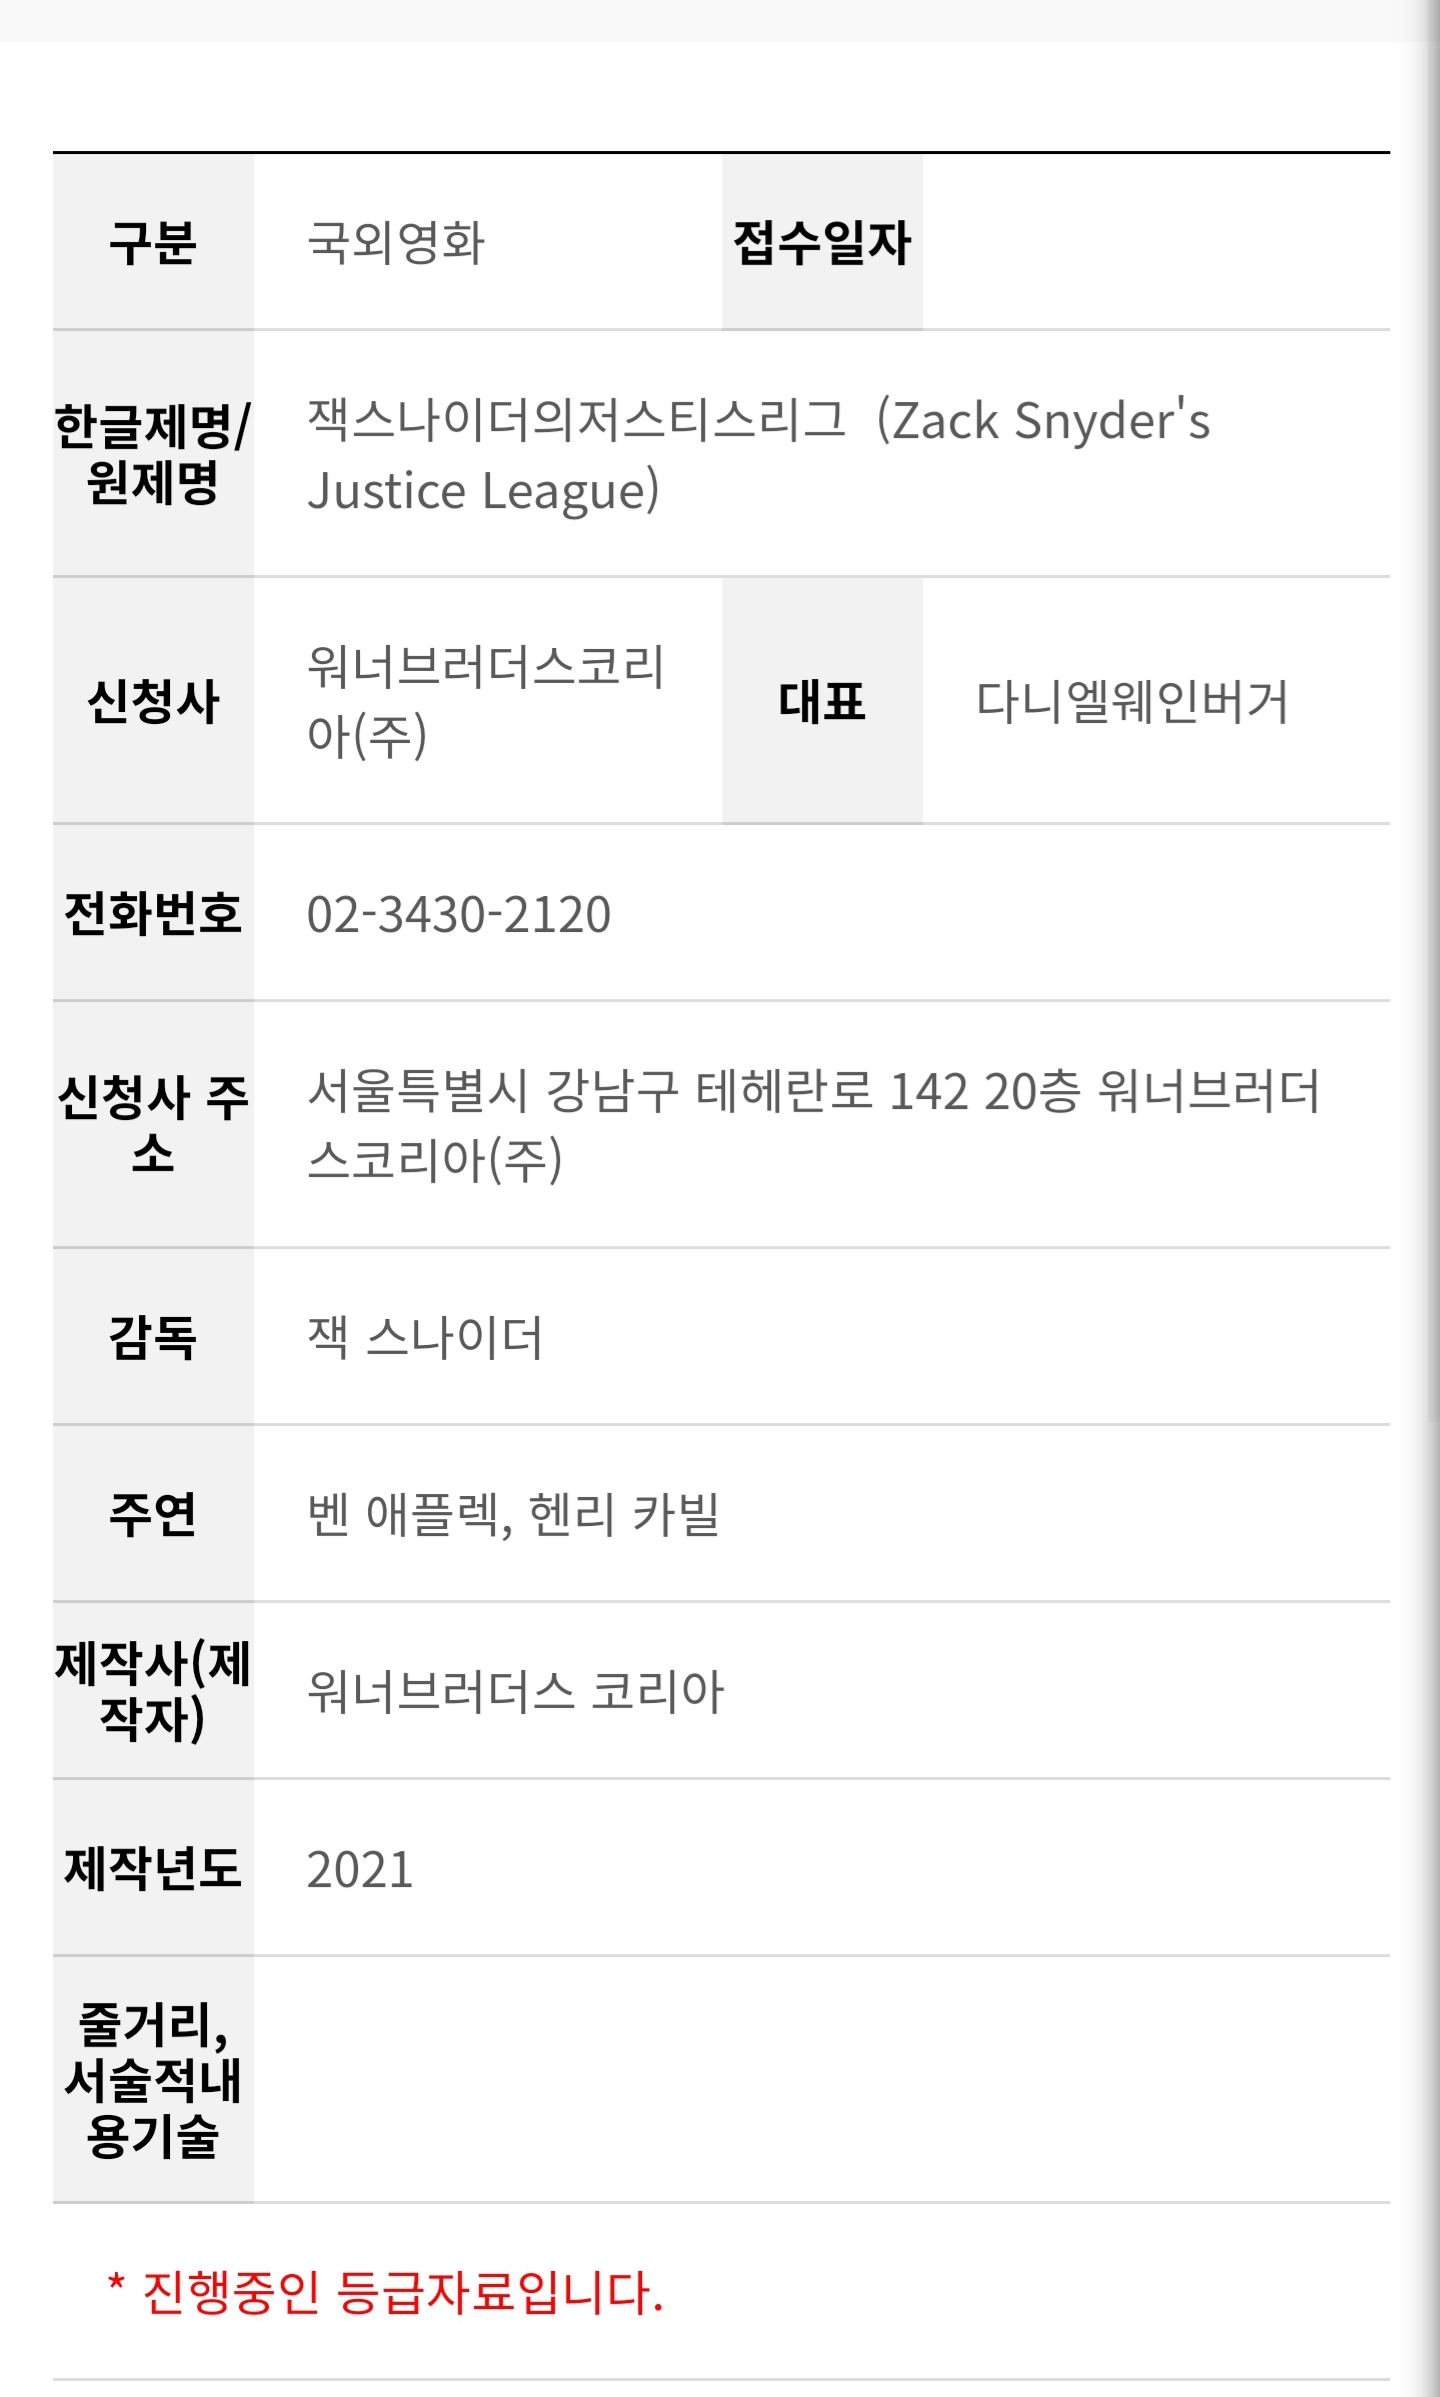 Jack Snyder's Justice League Korea Open Platform Reveals